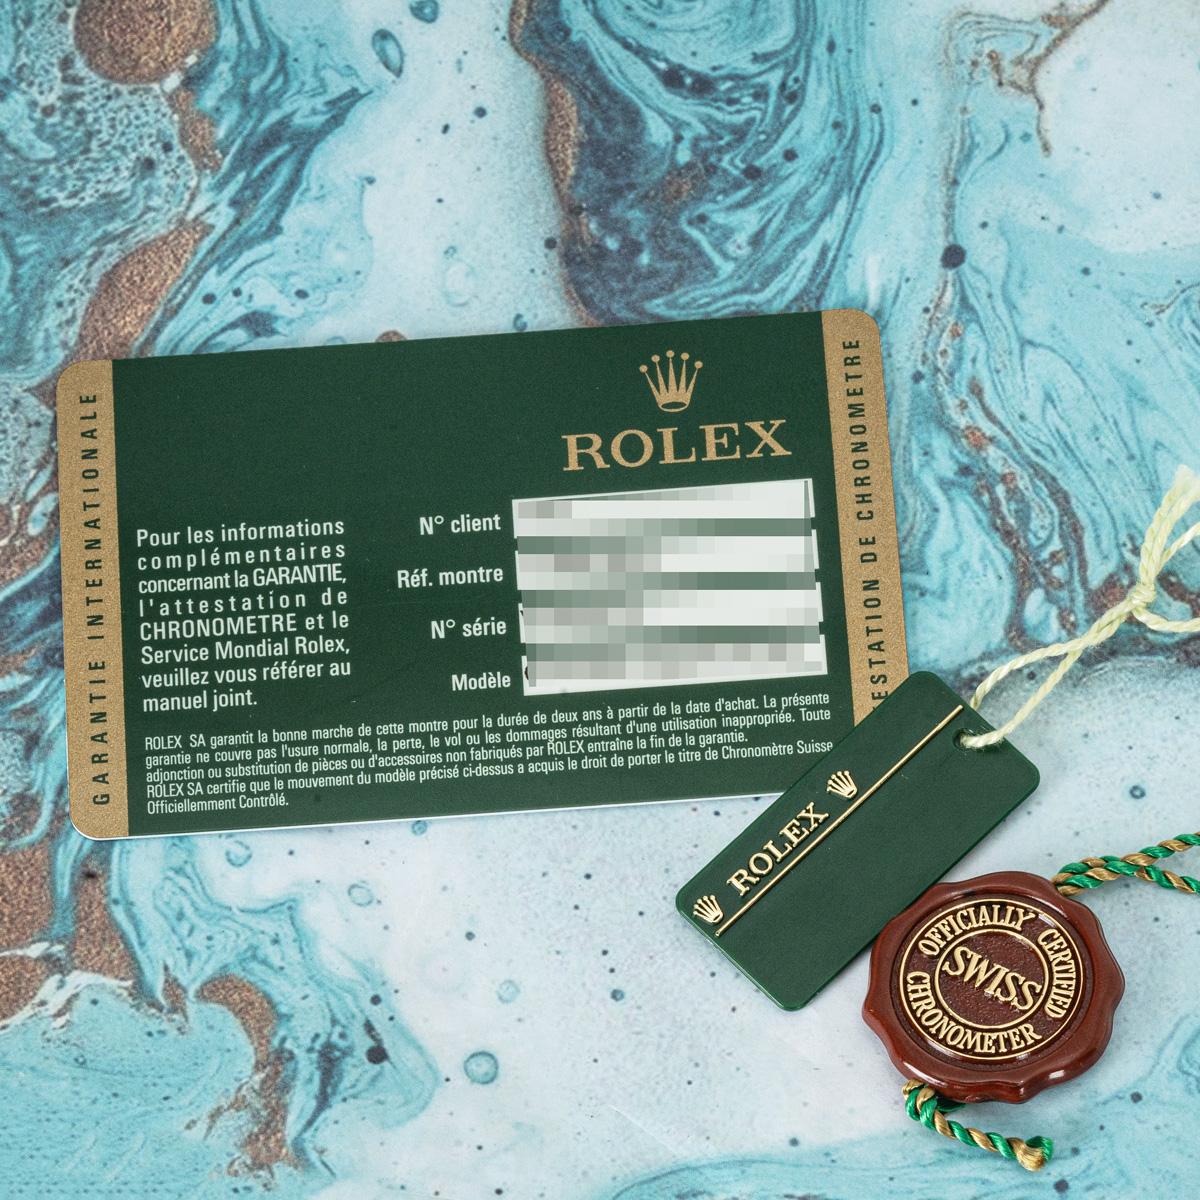 Rolex Rare Submariner Smurf Diamond Dial 116619LB For Sale 2